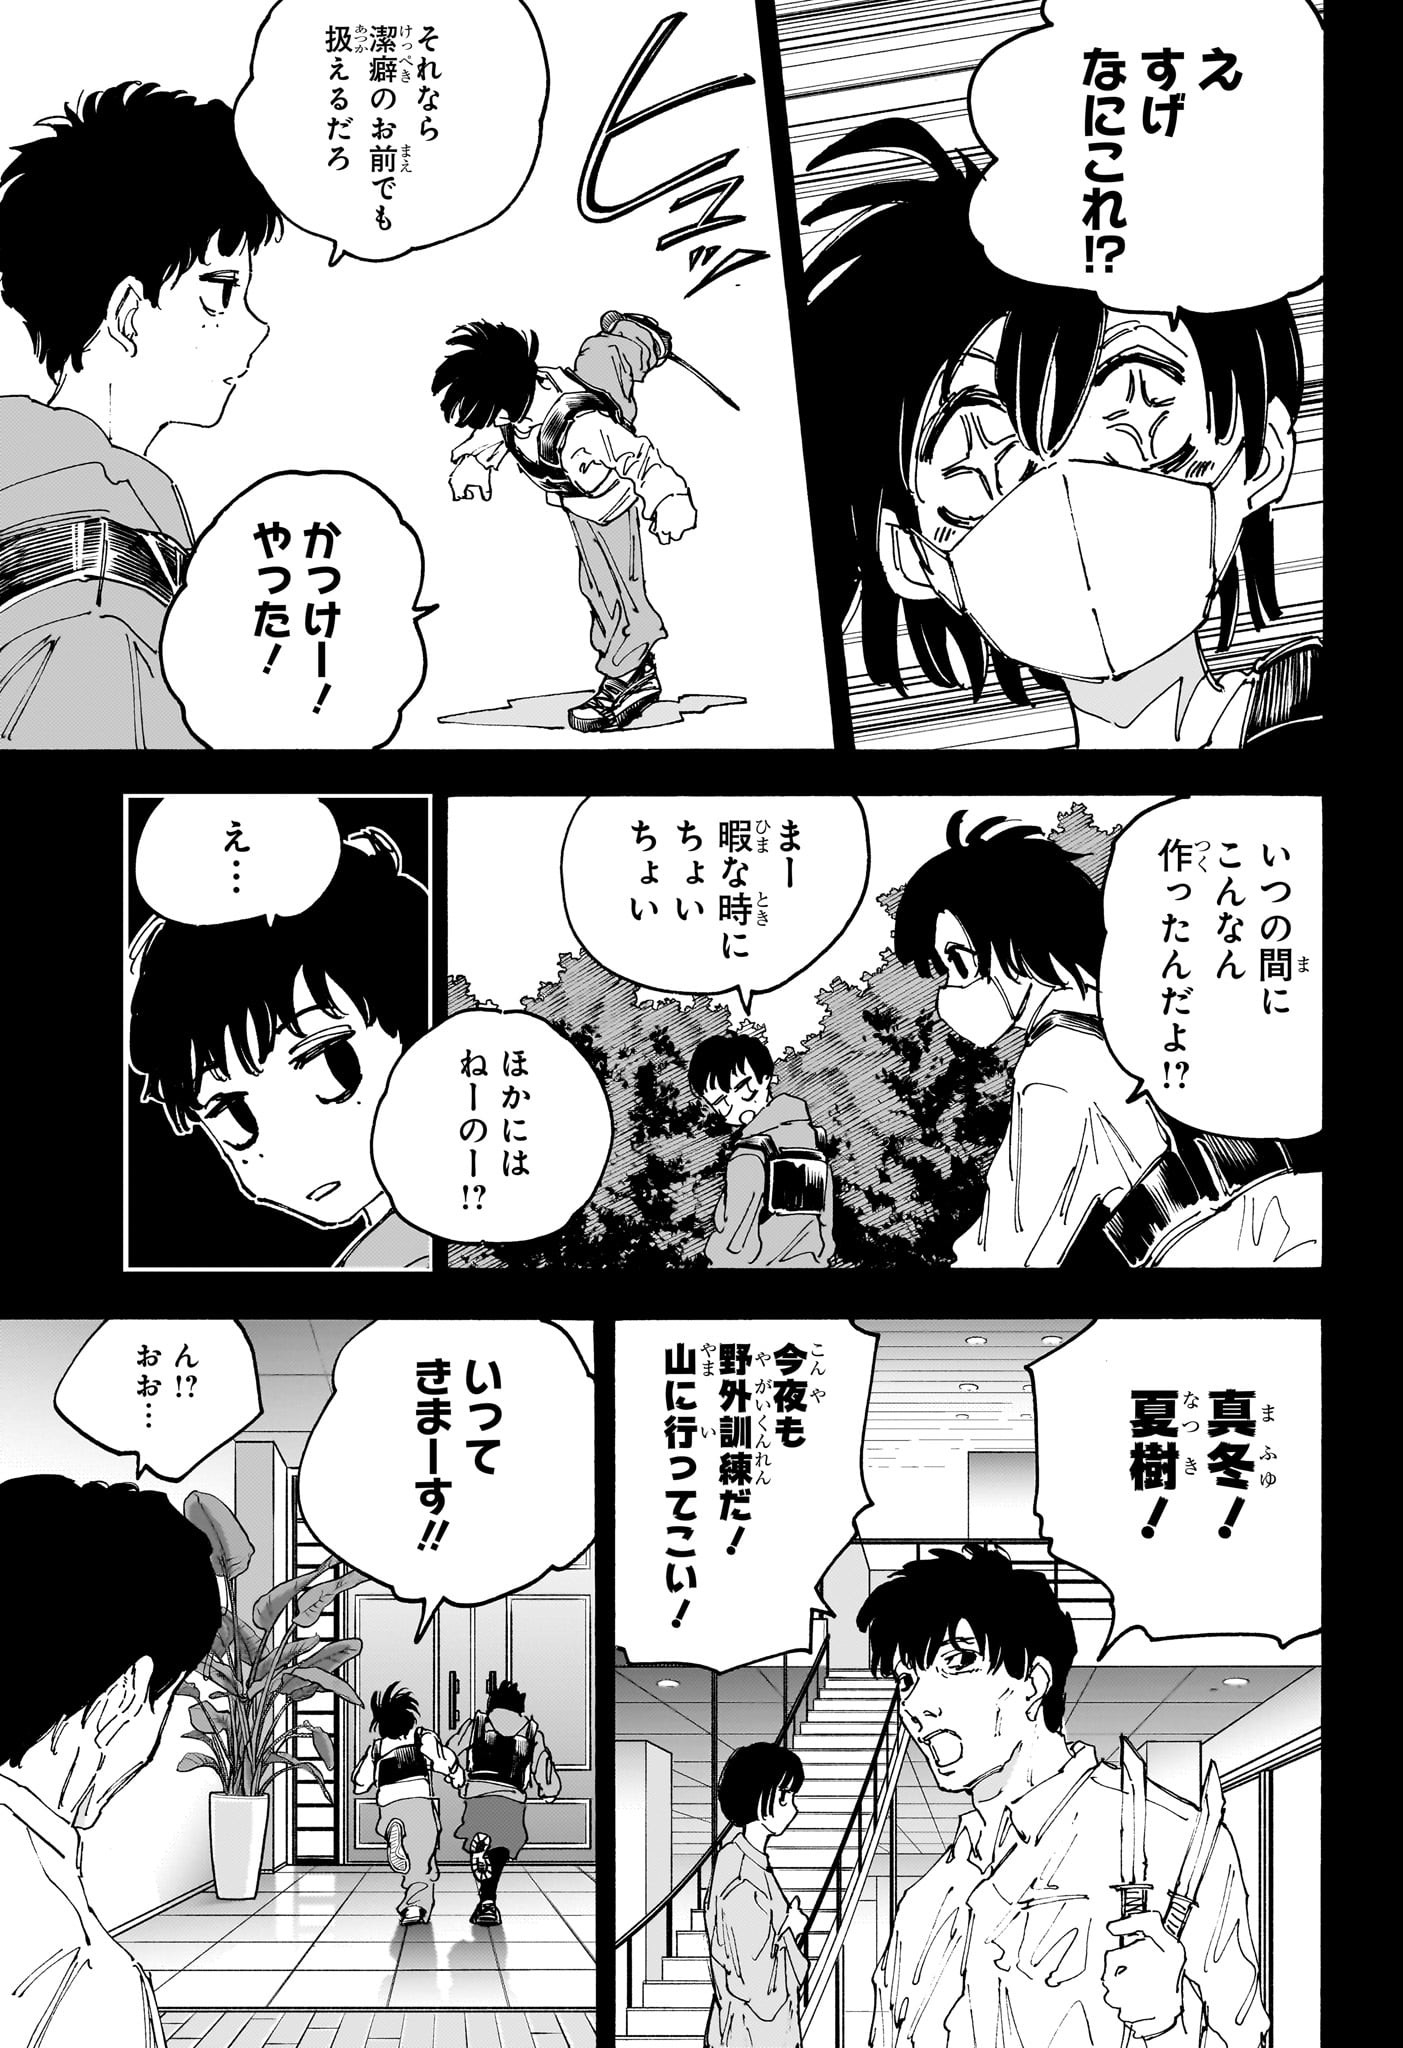 Sakamoto Days - Chapter 145 - Page 3